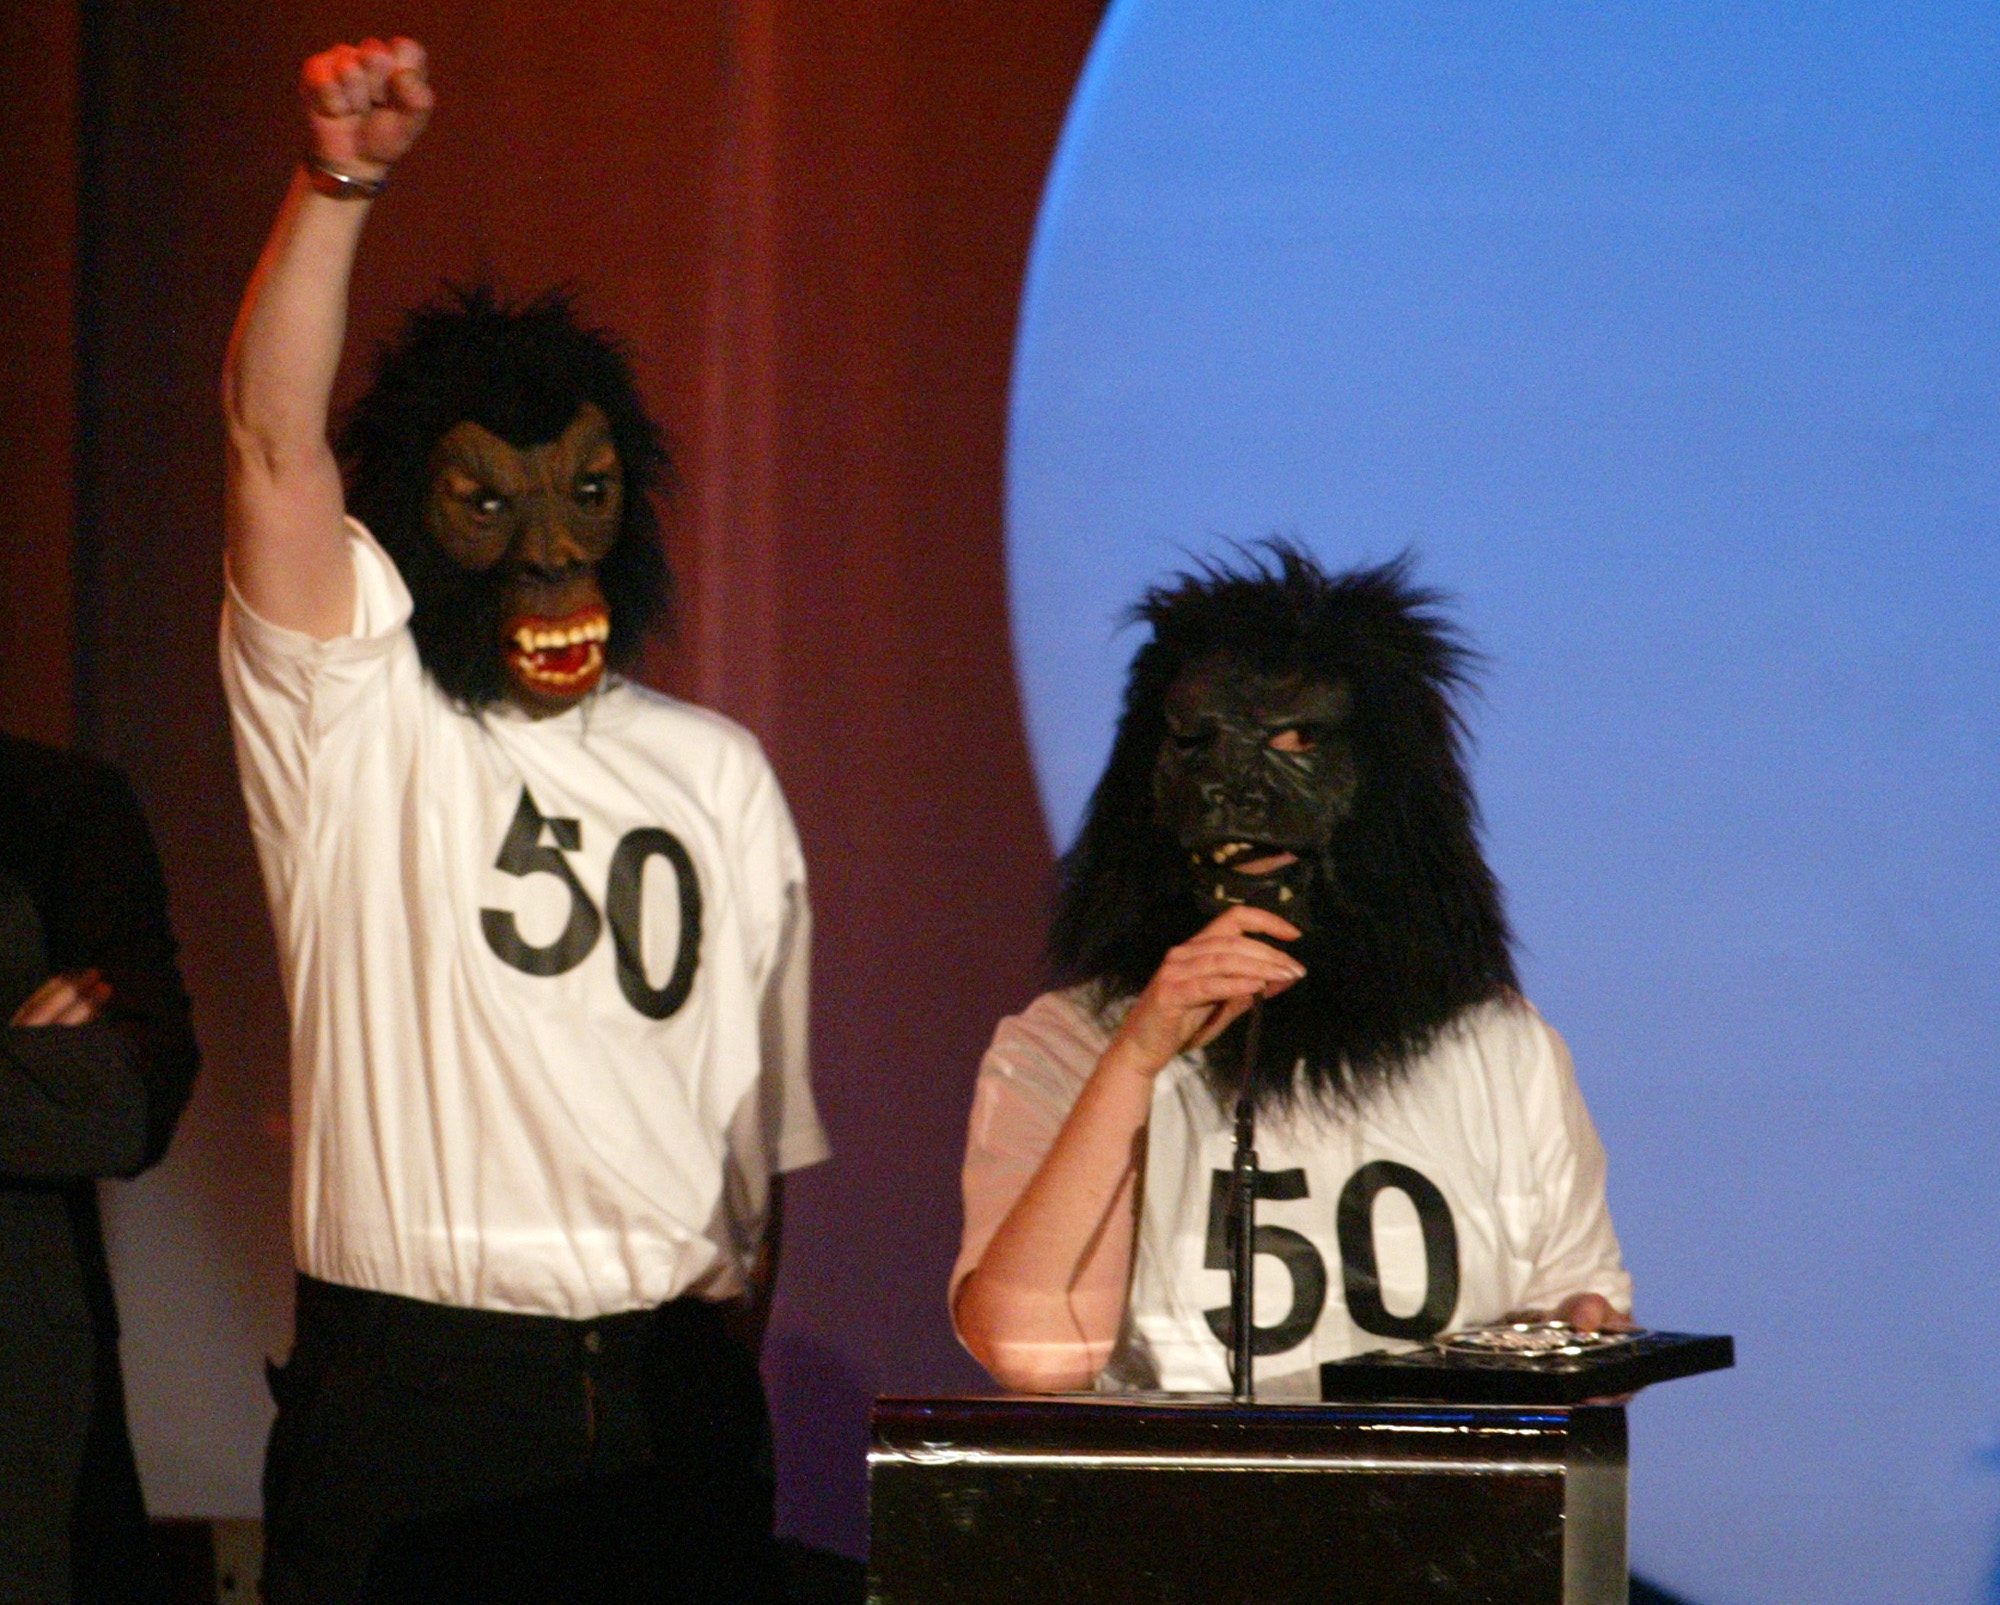 The Knife verkar inte gilla Grammisgalan. År 2003 skickade de två gorillor till galan, som en protest mot den mansdominerade musikbranschen.